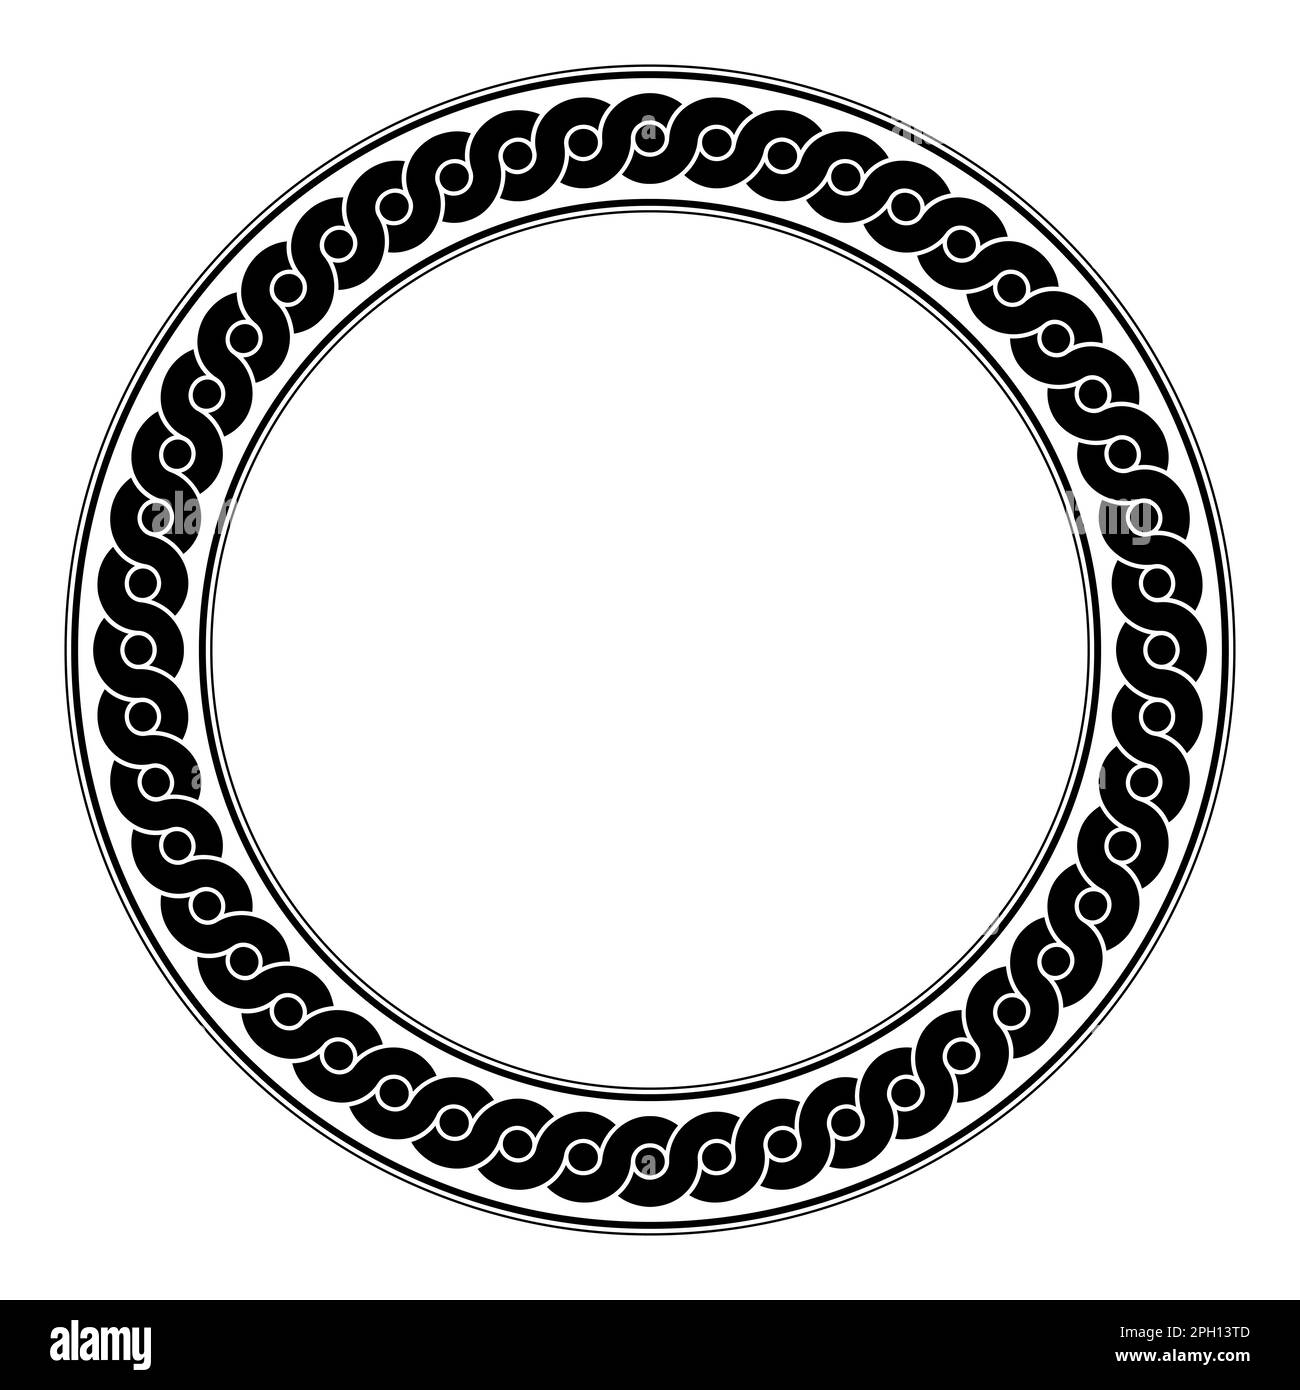 Motif d'onde entrelacée, cadre circulaire. Des lignes en serpentin noires formant une bordure circulaire, avec des points entre les vagues qui se chevauchent. Modèle grec ancien. Banque D'Images